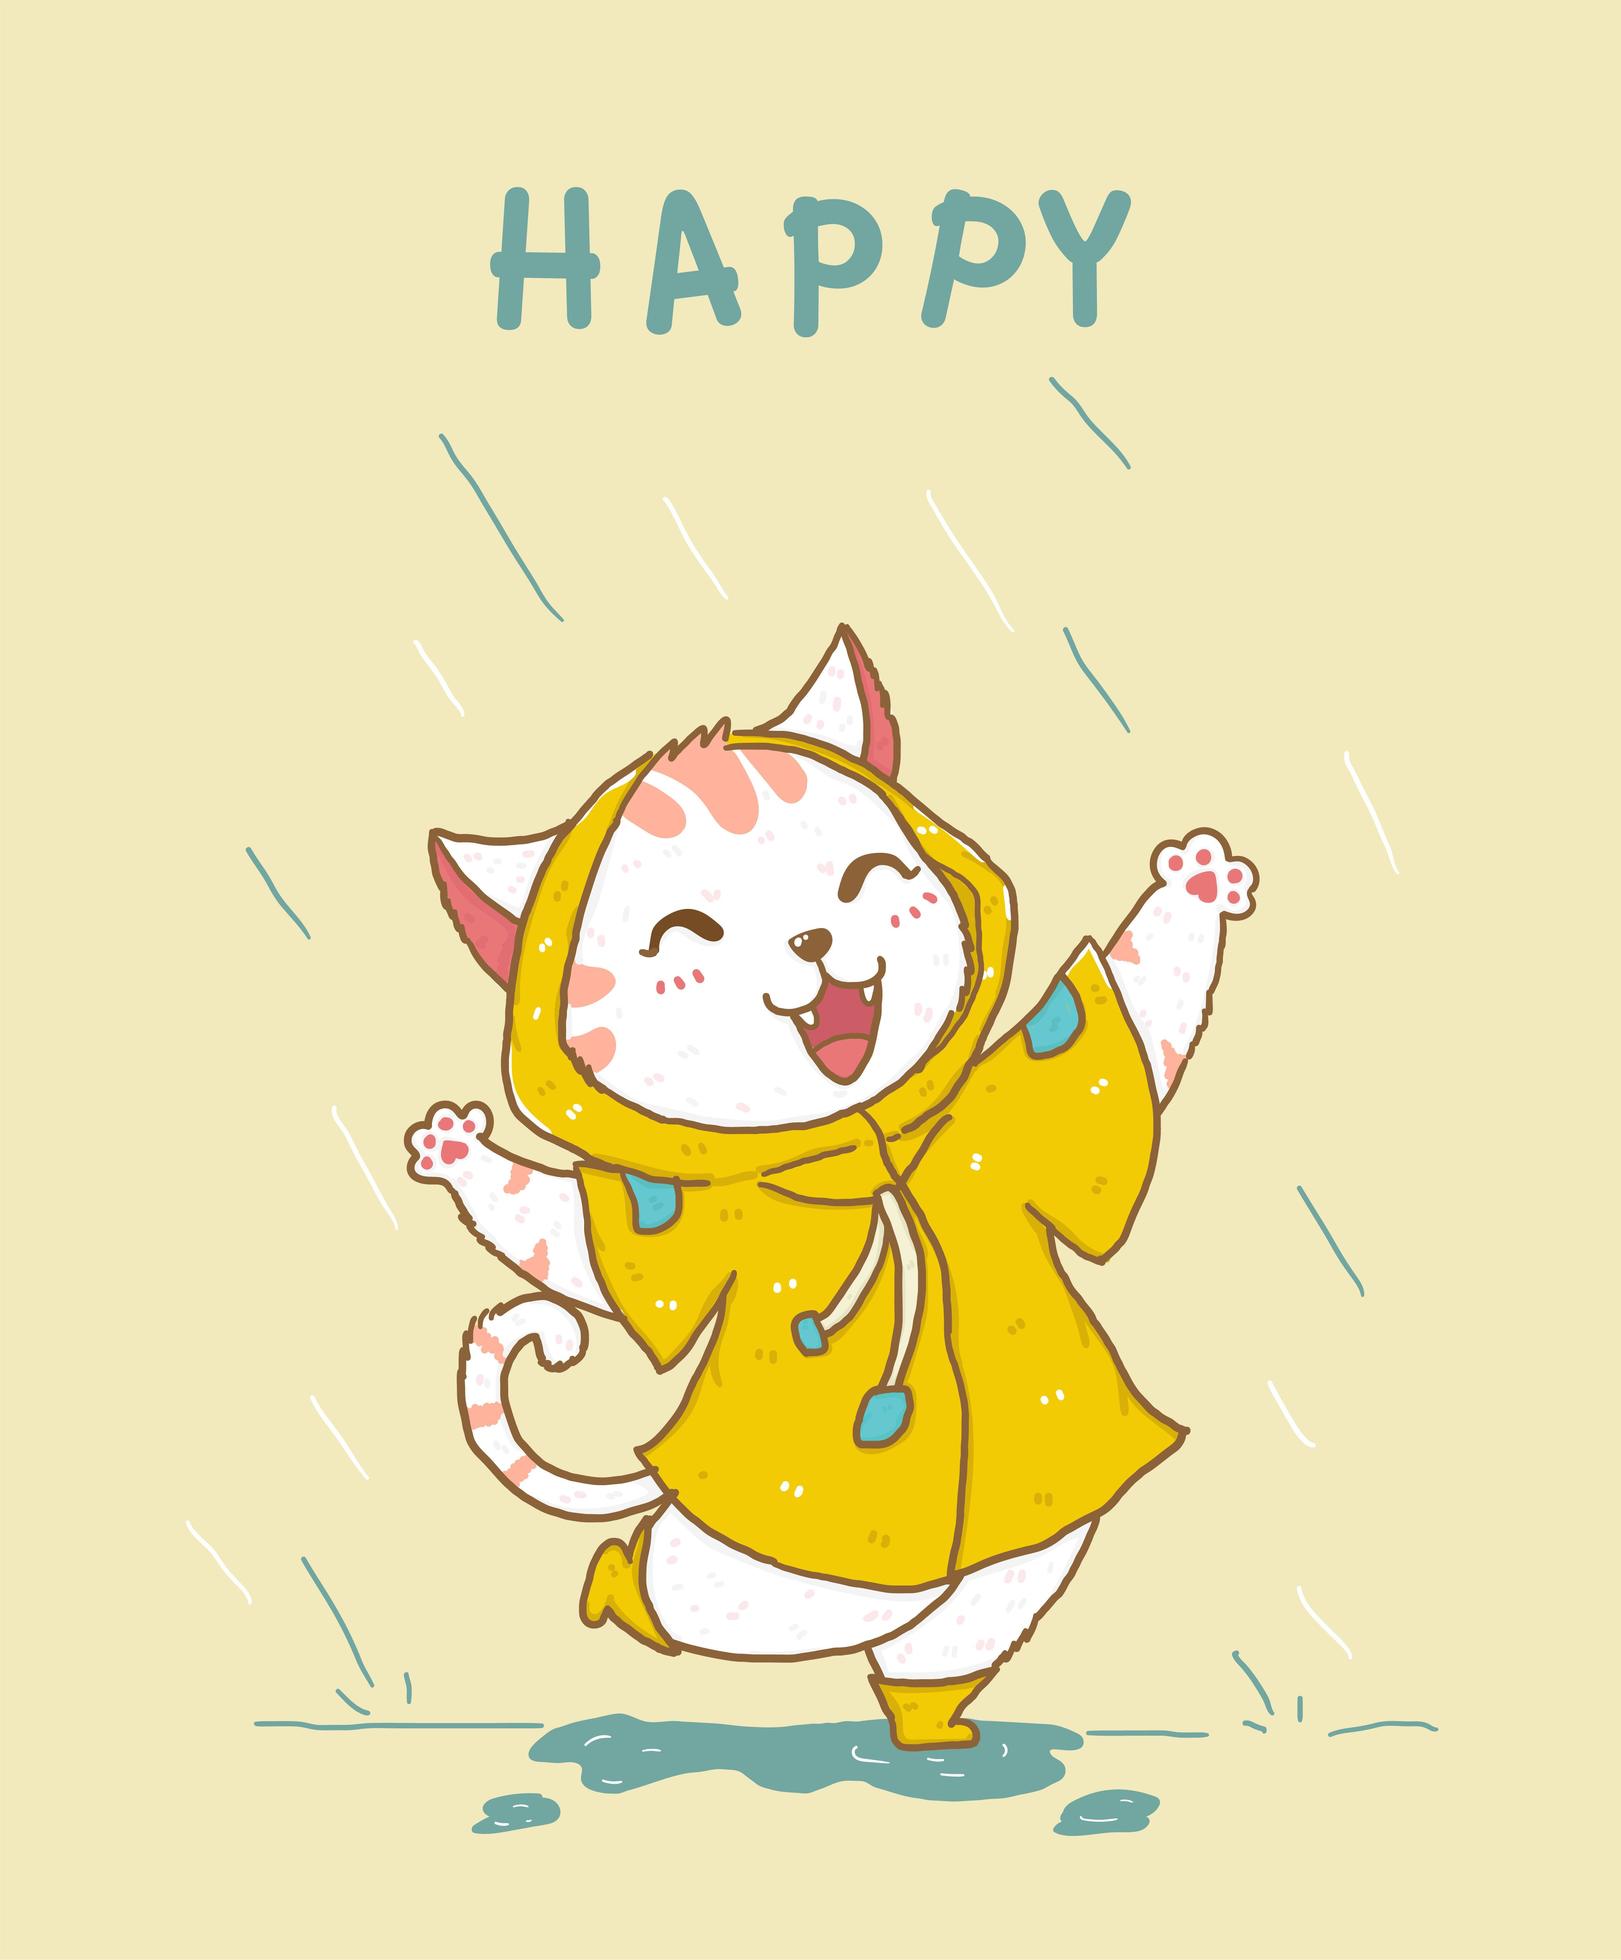 gato branco fofo e feliz com uma capa de chuva amarela pulando na chuva vetor